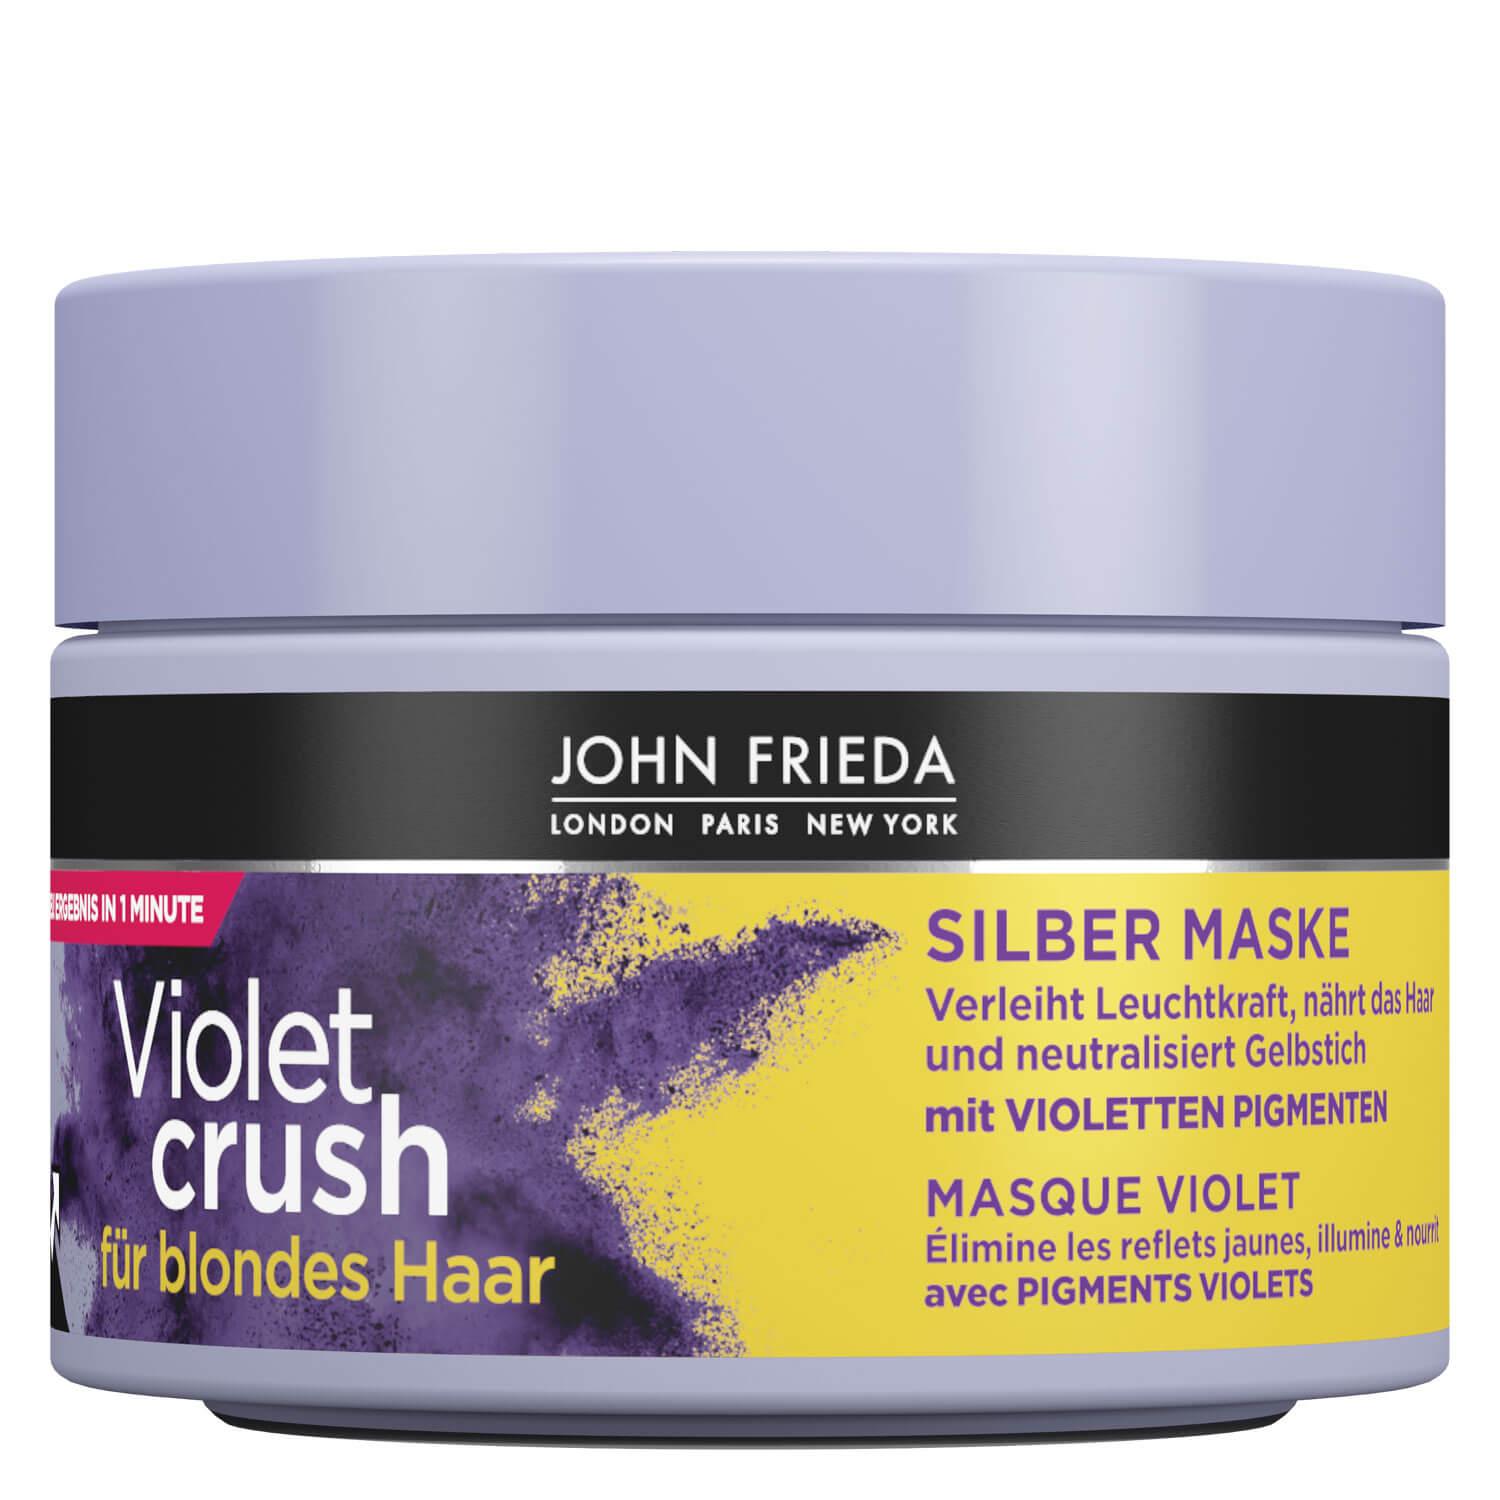 Sheer Blonde - Violet Crush Silber Maske